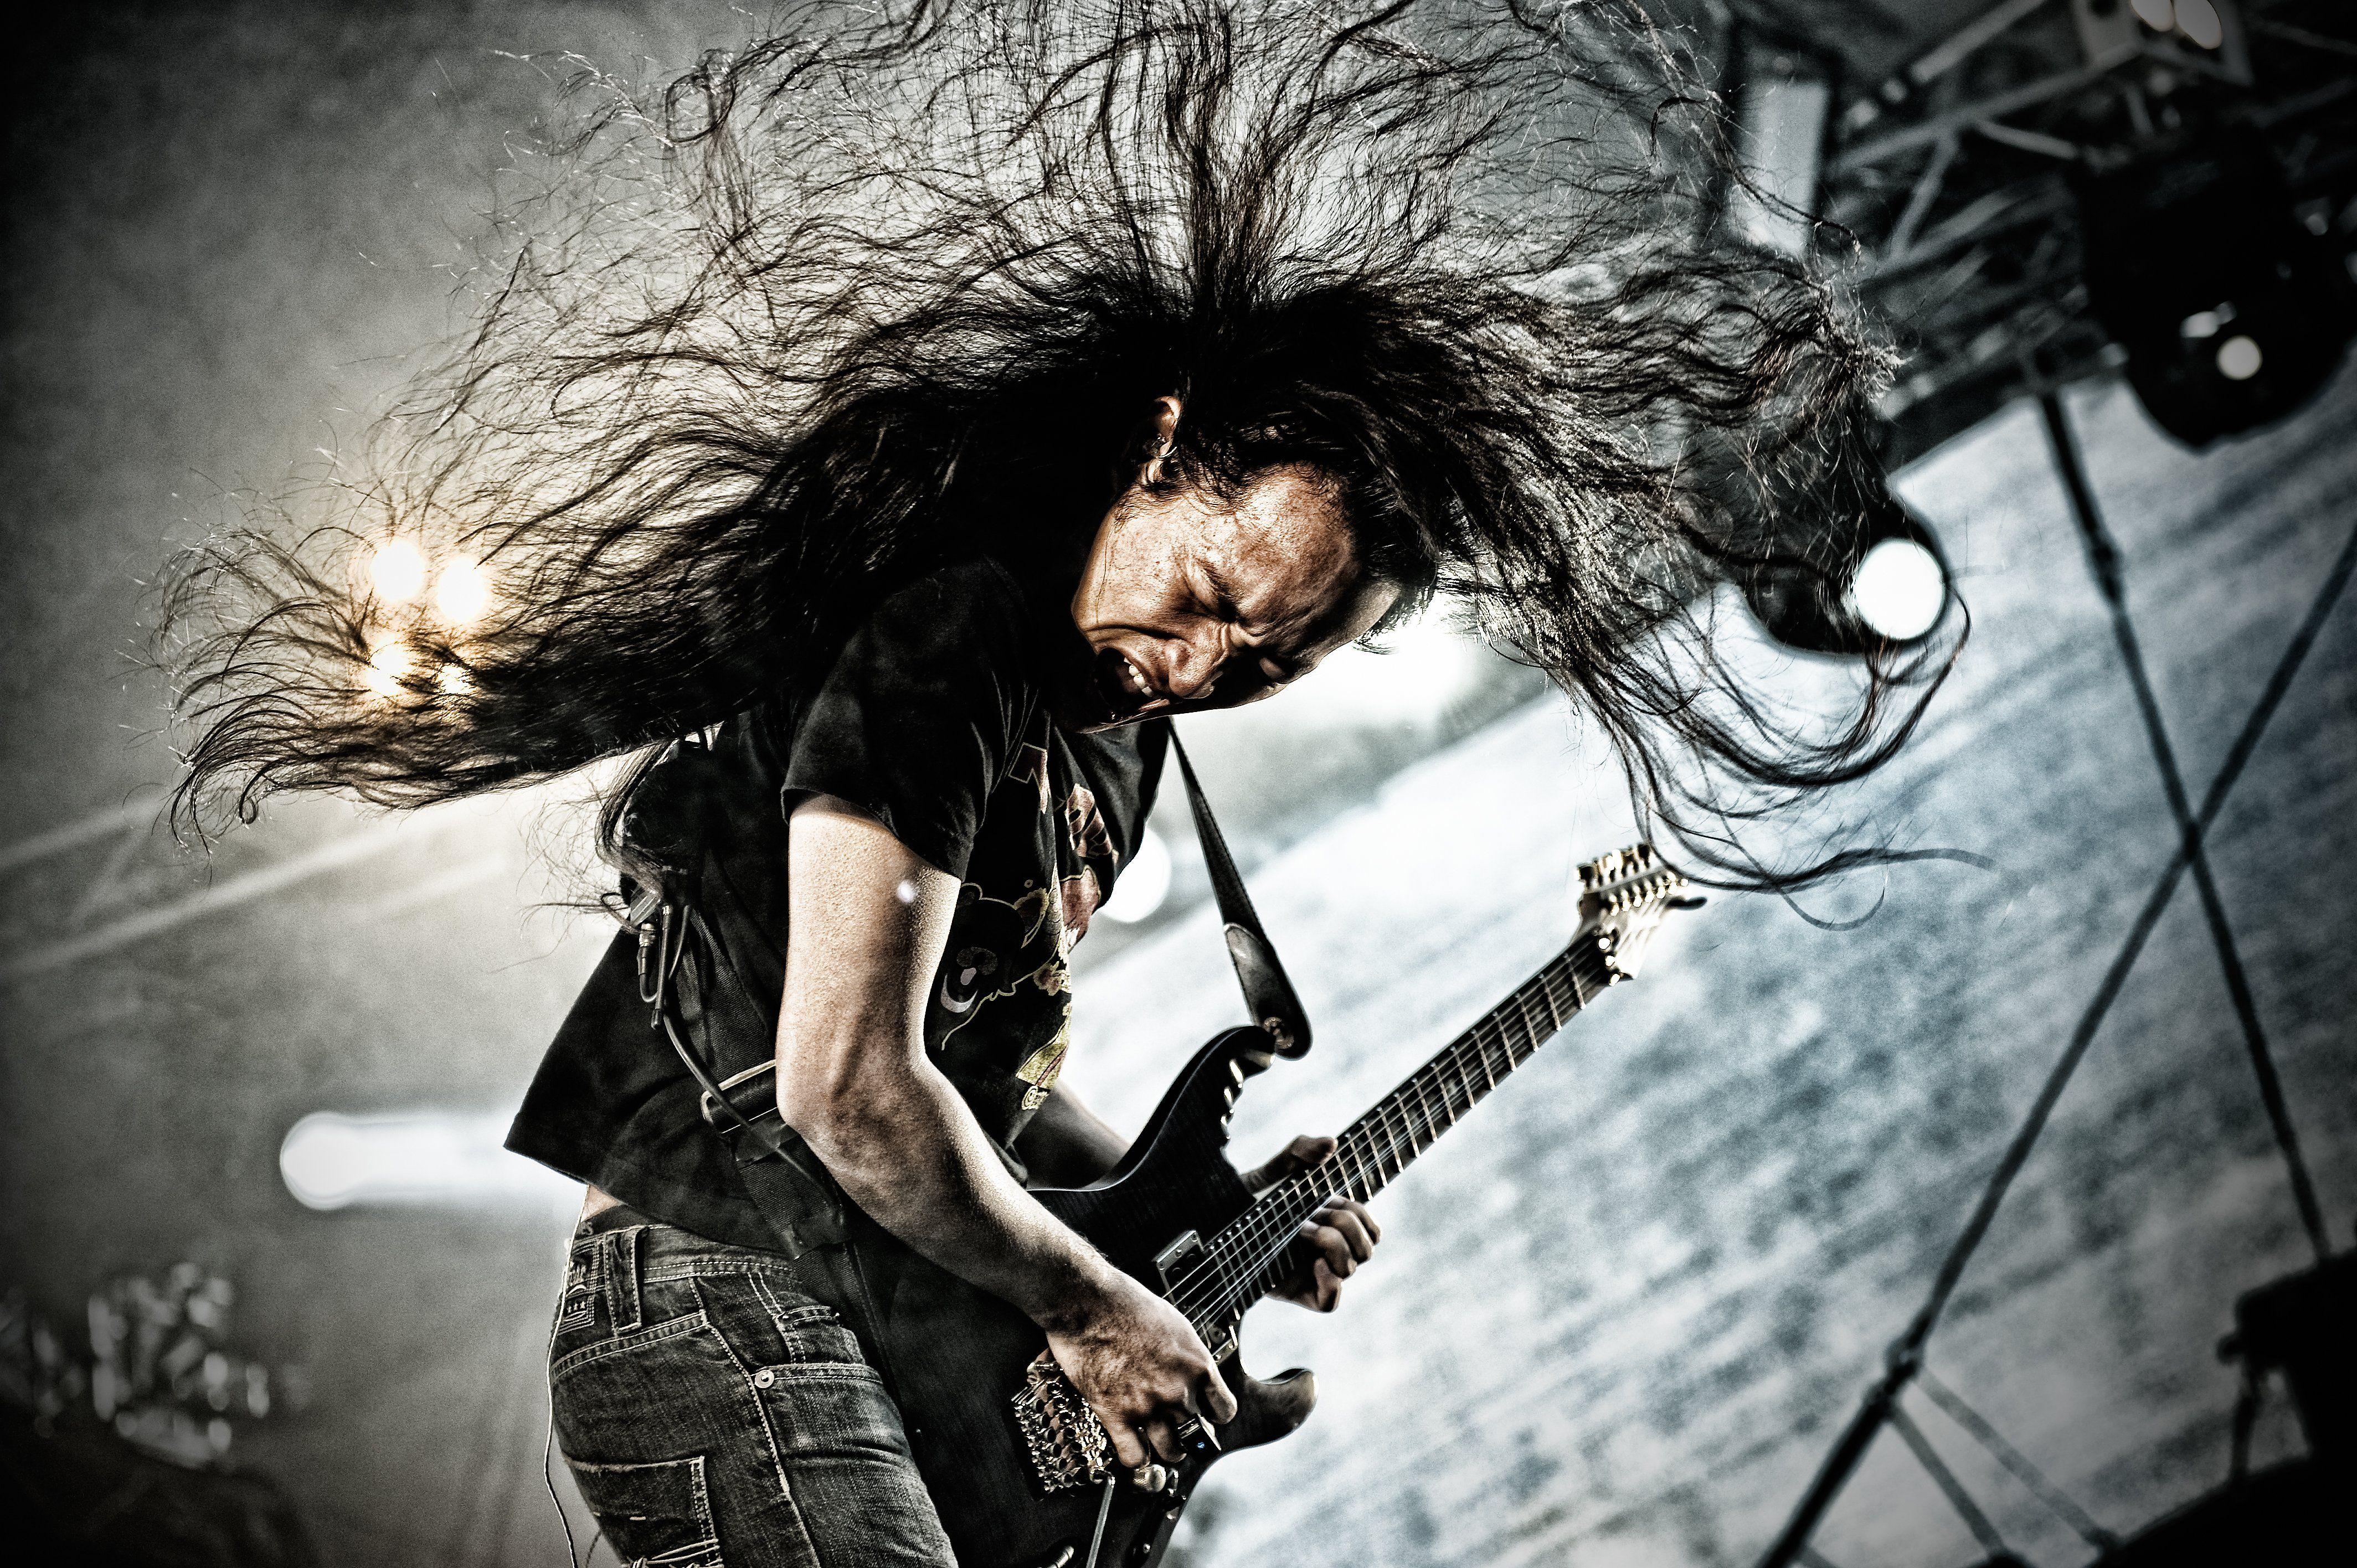 DRAGONFORCE speed power metal heavy progressive guitar concert